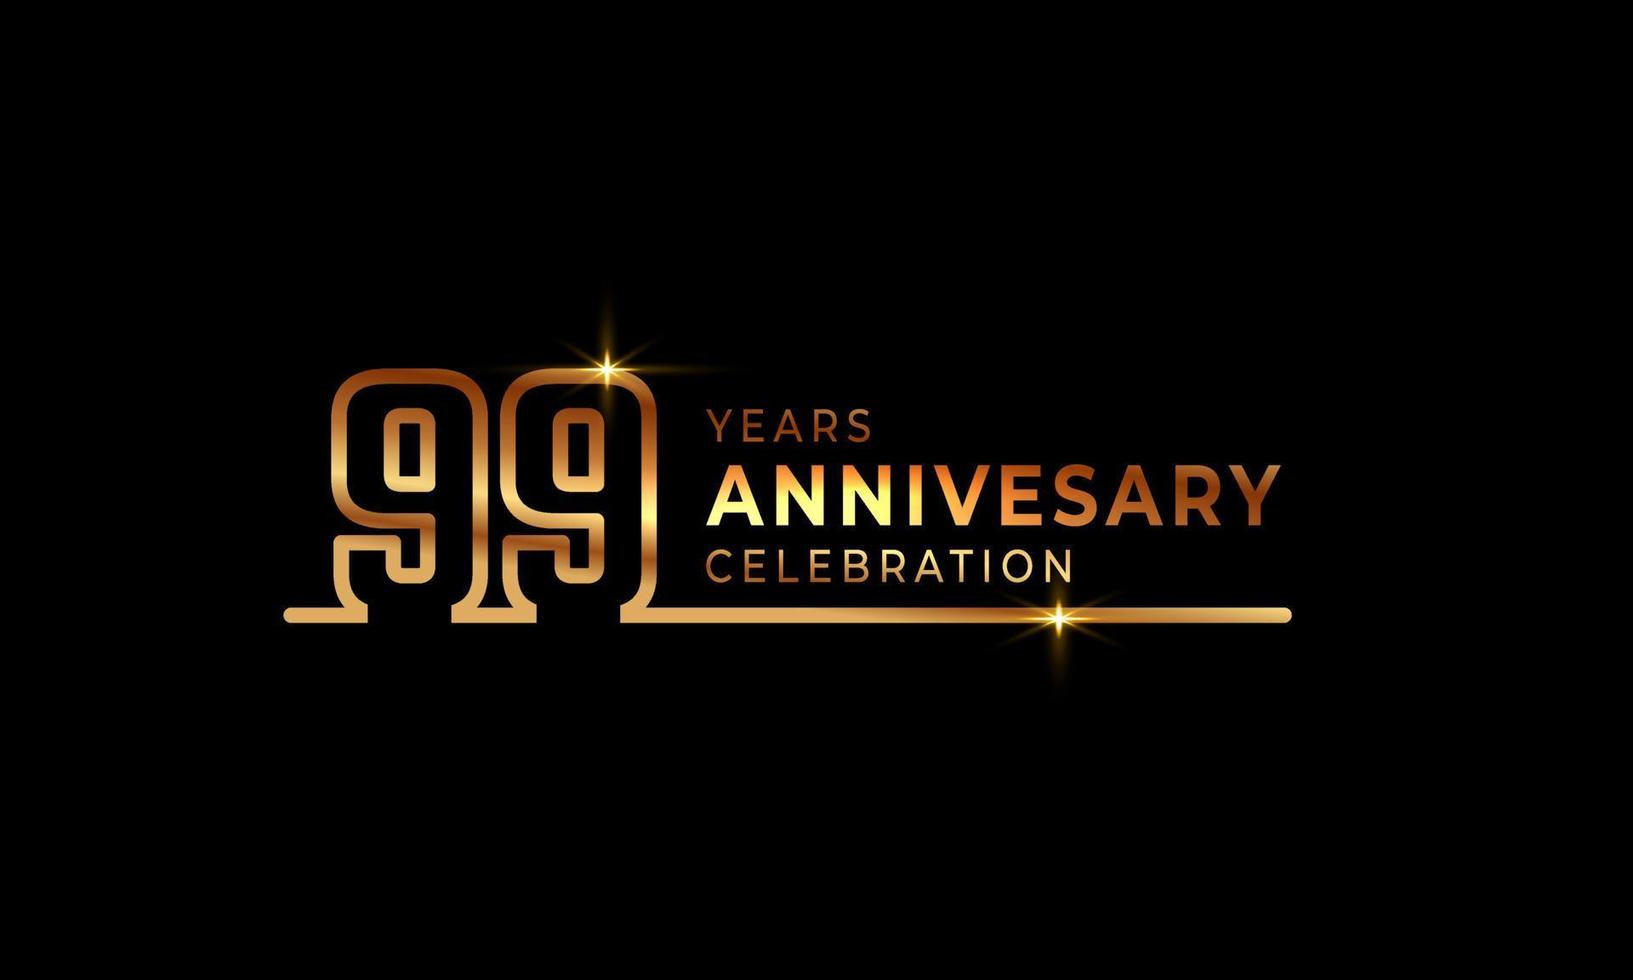 99-jarig jubileumviering logo met gouden gekleurde lettertypenummers gemaakt van één verbonden lijn voor feestgebeurtenis, bruiloft, wenskaart en uitnodiging geïsoleerd op donkere achtergrond vector